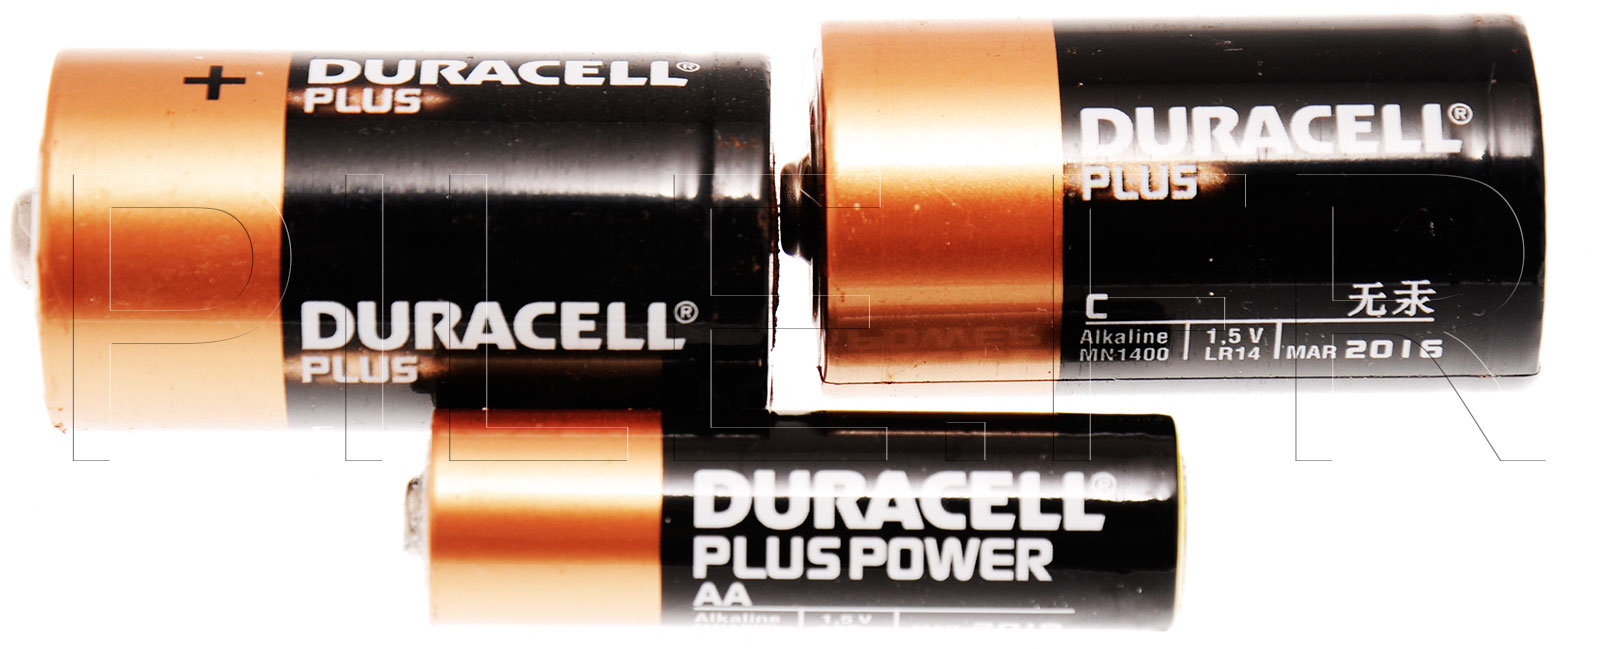 Pile alcaline Duracell Procell, 10 piles Duracell Procell Type LR06, AA 1,5  volts, piles professionelles de haute qualite